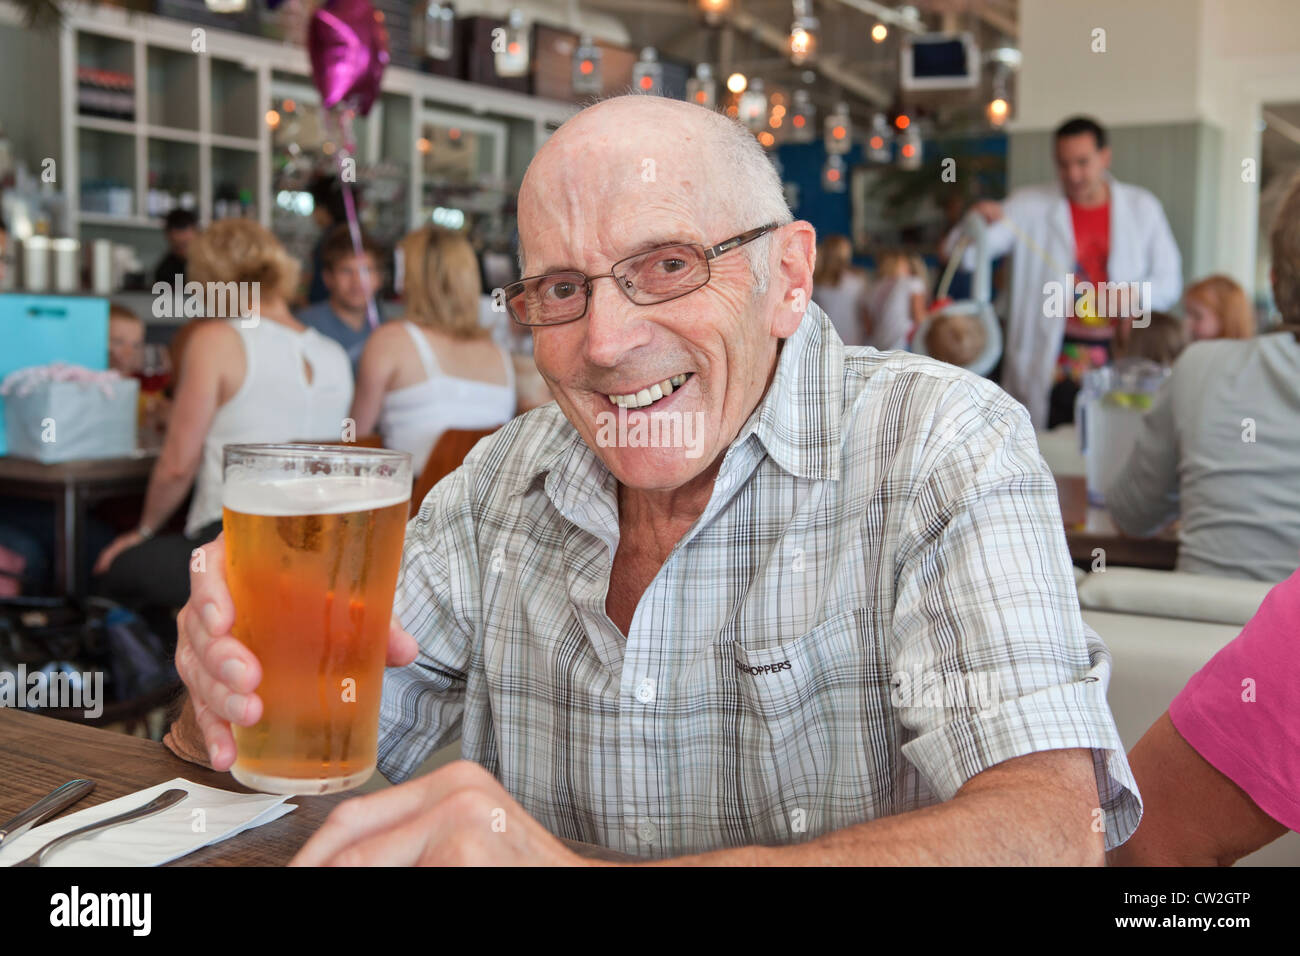 Bénéficiant d'un pensionné de la bière Banque D'Images